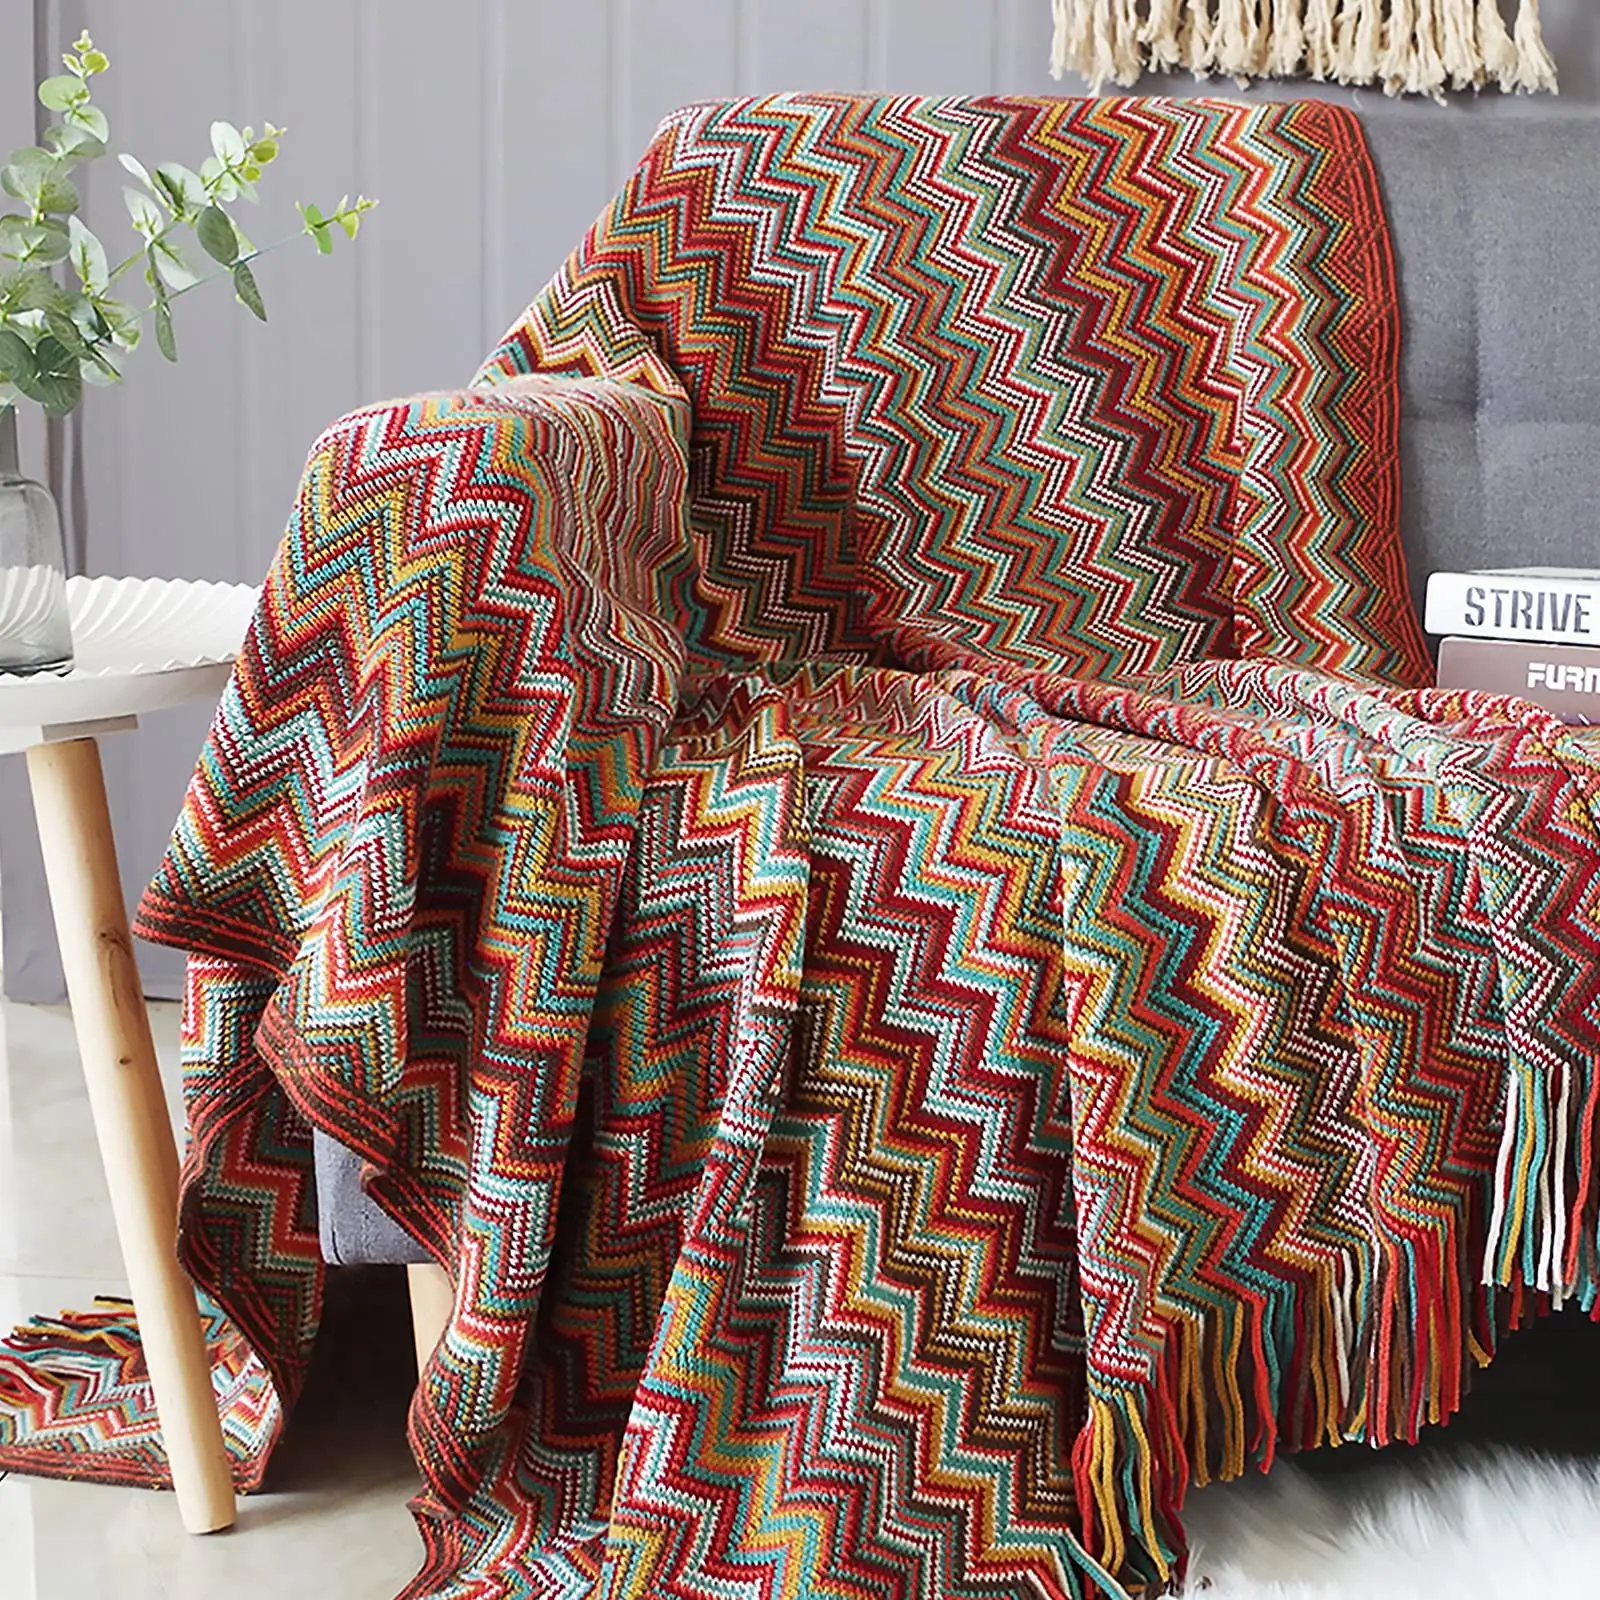 Bohème vérifier doux chaud confortable léger canapé couverture couvre-lit couverture décorative tricoté jeter couverture avec glands